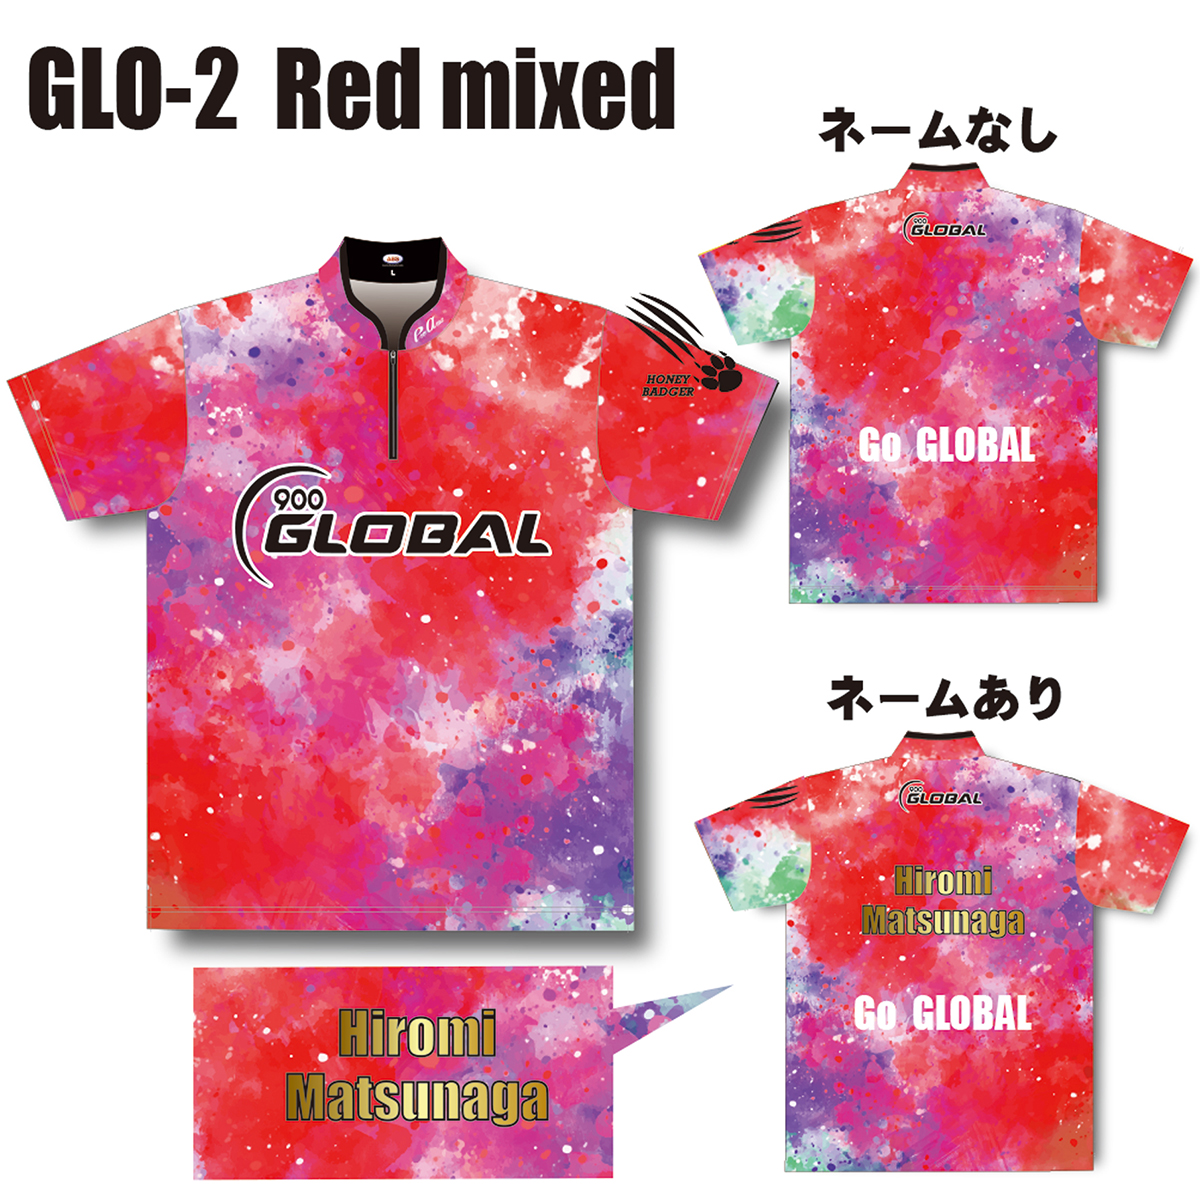 ハニーバジャーウエア(GLO-2、Red mixed)